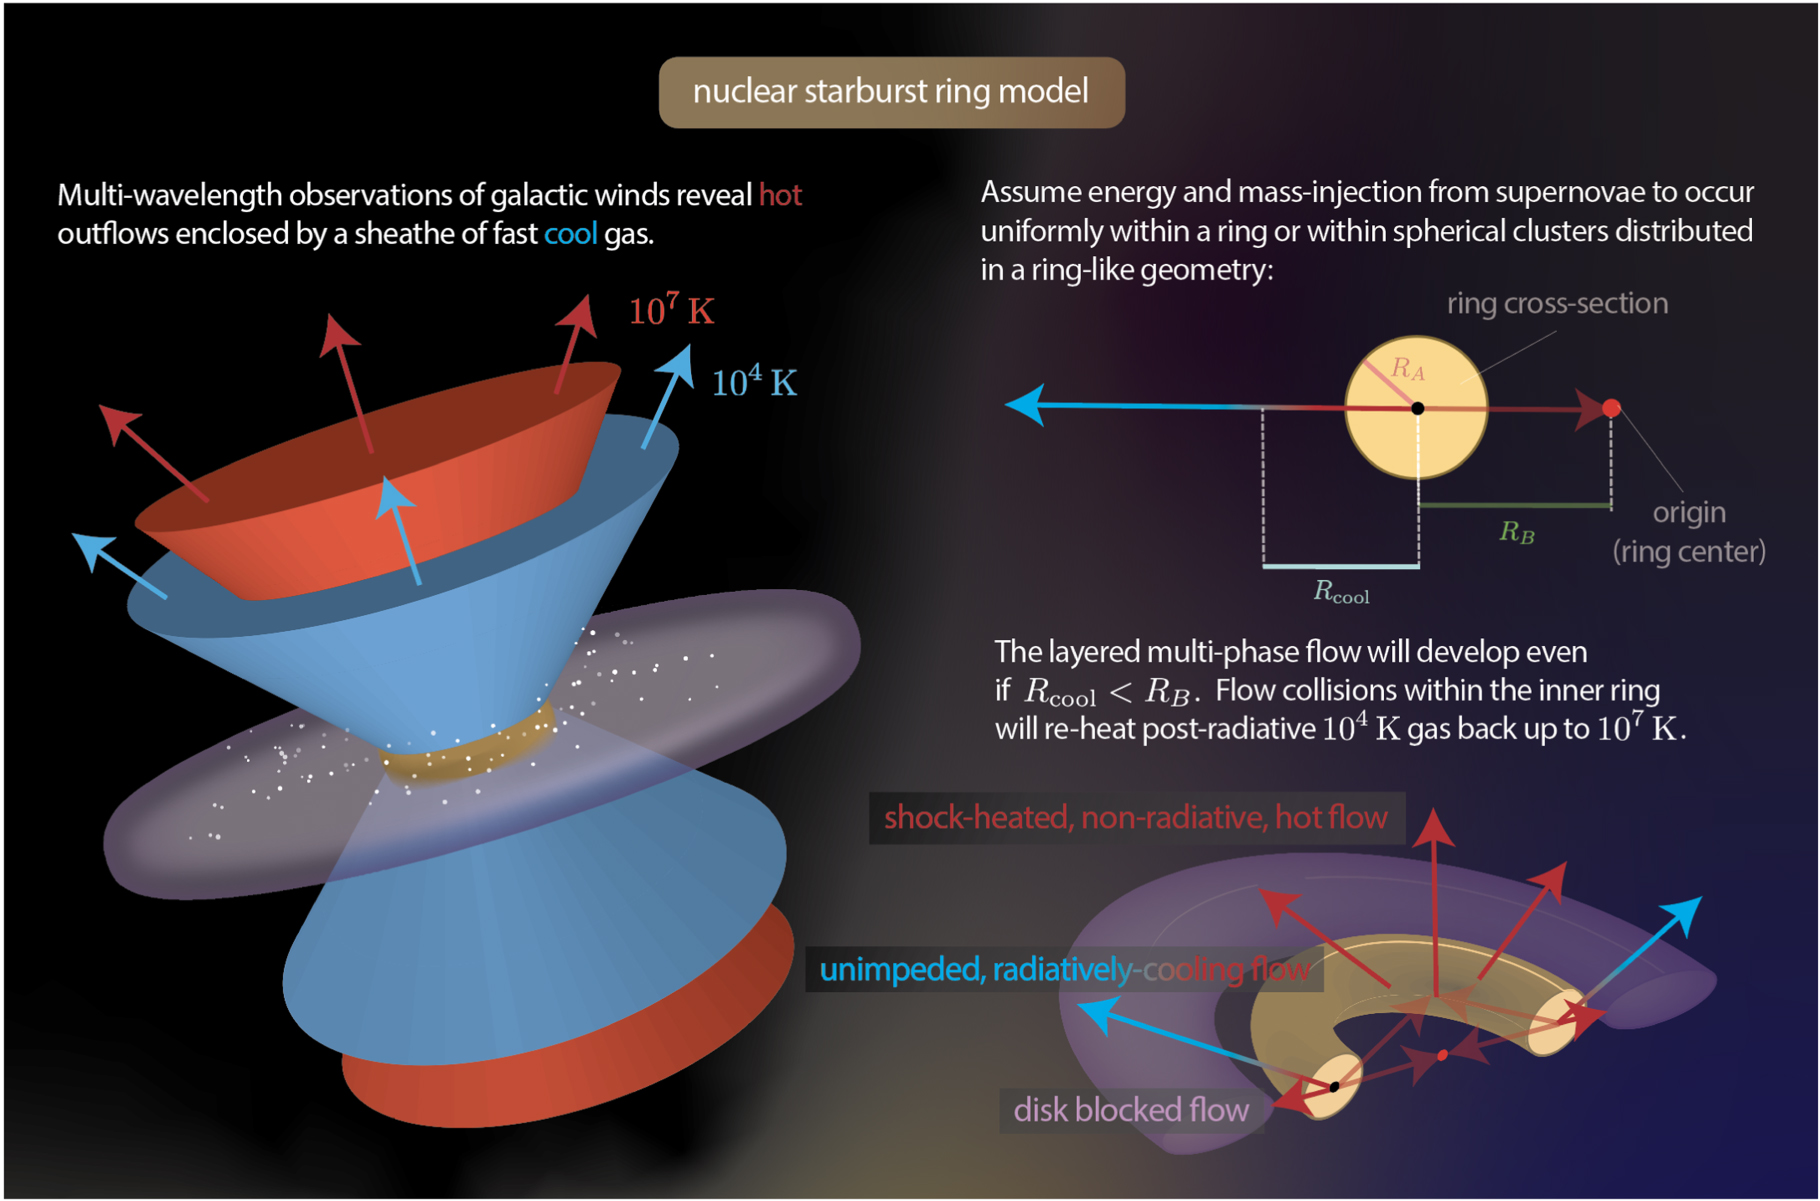 Schematyczny model pierścienia z rodzącymi się gwiazdami, który otacza jądro galaktyki. Model wyjaśnia krytyczną kwestię mechanizmu przyspieszania chłodnego składnika wiatru galaktycznego (np. M82–zmierzona prędkość ~500-1000 km/sek). W tym modelu supernowe wyrzucają energię i masę przy założeniu geometrii pierścienia. Prowadzi to do stałego wypływu materii o początkowej temperaturze ~10 mln K, który przyspiesza do dużej prędkości, gdy opuszcza objętość pierścienia. Dla wypływów o dużych masach, wiatr opuszczający zewnętrzny obszar pierścienia, może szybko schłodzić się do temperatury ~10 tys. K w odległości Rcool - praktycznie bez utraty prędkości. W symulacjach uwzględniono szerokość pierścienia RA: 25-200 pc i jego promień RB: 0,5-2 kpc. Wynikiem jest wielofazowy szybki wypływ materii nad płaszczyznę dysku galaktycznego (kolor fioletowy) o różnej temperaturze (kolor niebieski – 10 tys. K, kolor czerwony – 10 mln K). Źródło: The Astrophysical Journal Letters (2022). DOI: 10.3847/2041-8213/ac86c3